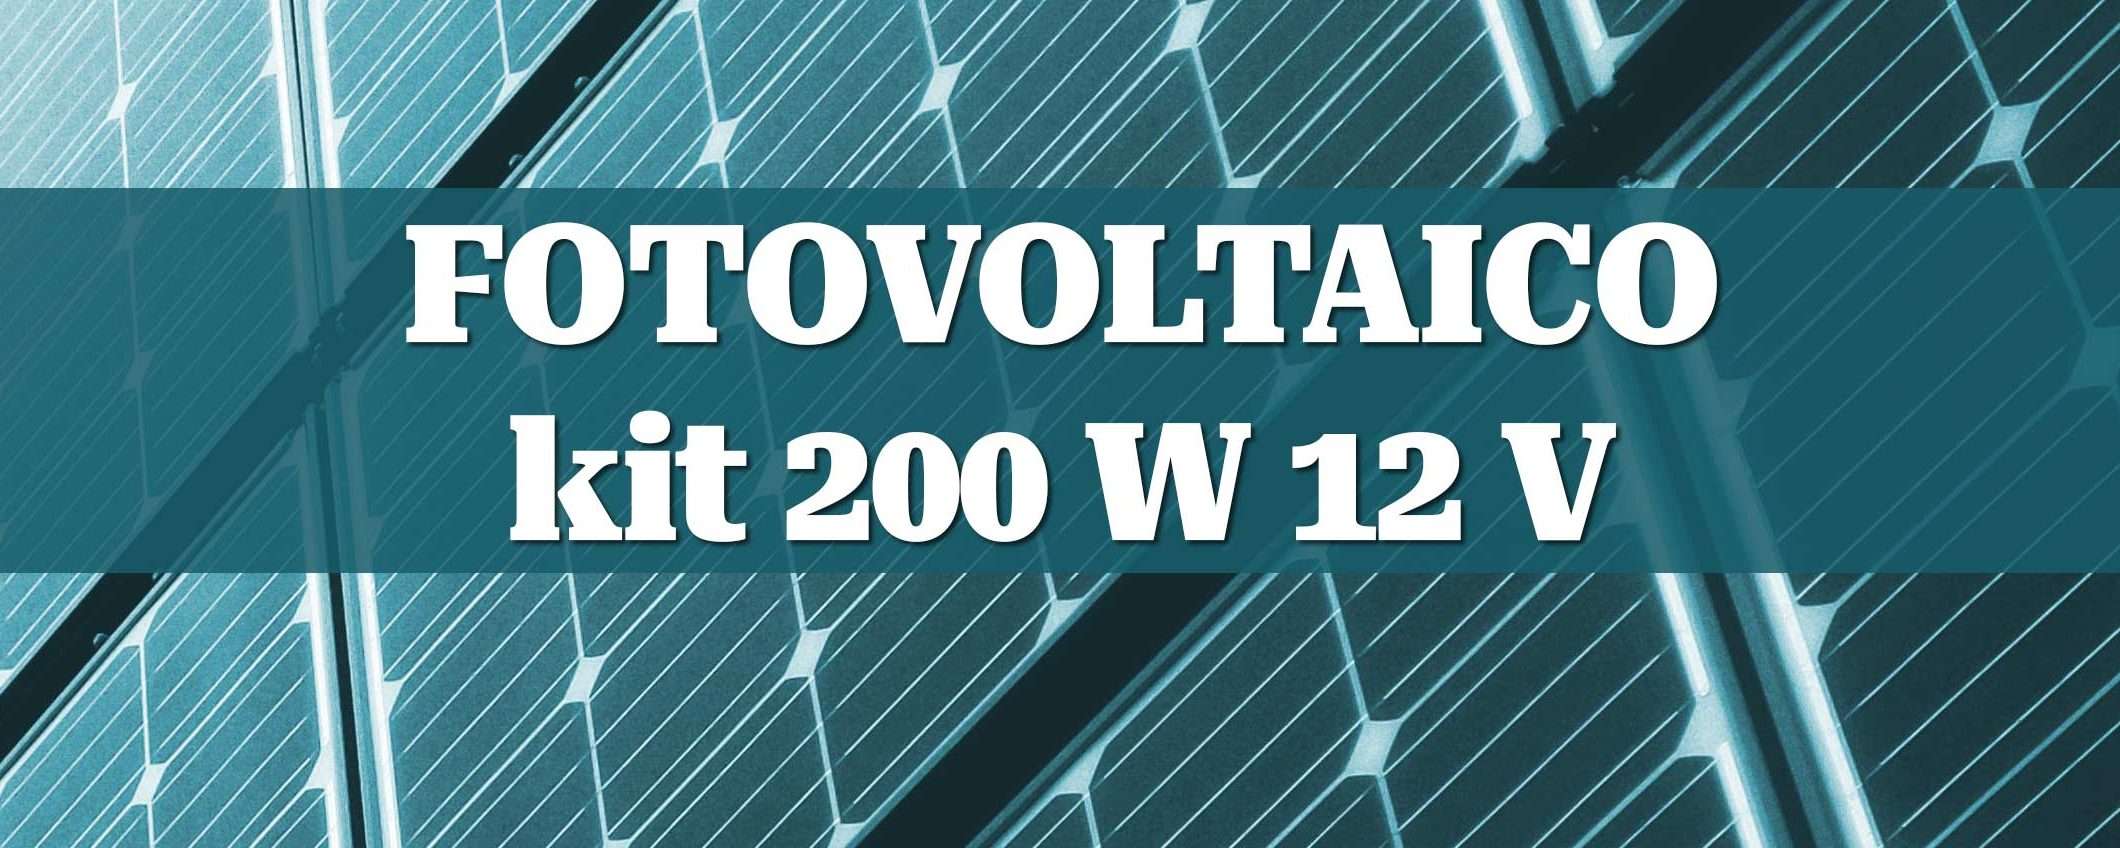 Fotovoltaico: kit 200W 12V per l'energia fai-da-te